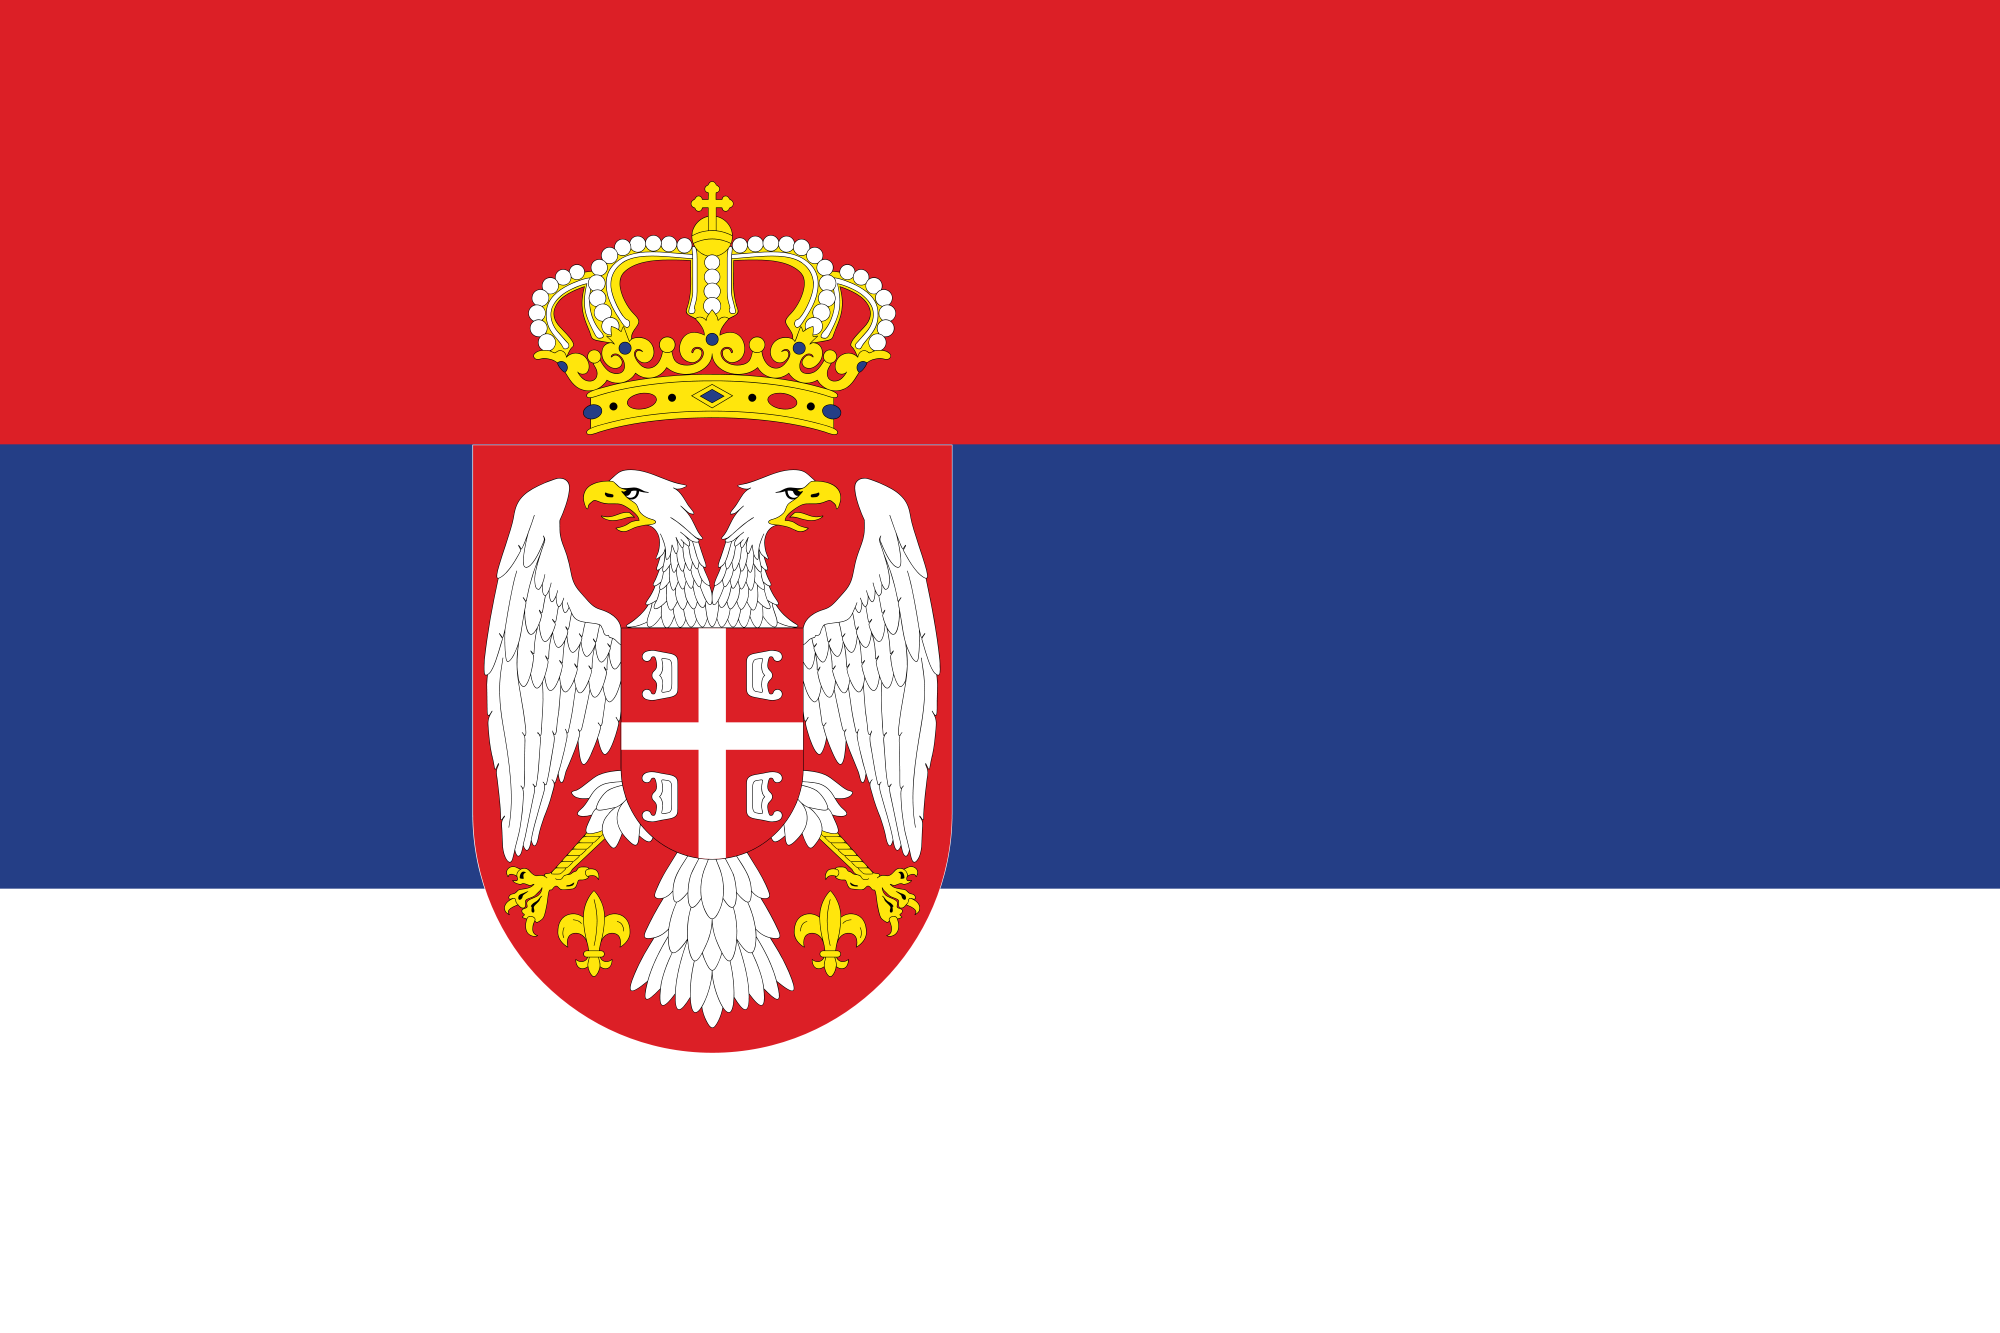 Hamarosan megkezdődik Szerbia és Horvátország egymás elleni hágai pere